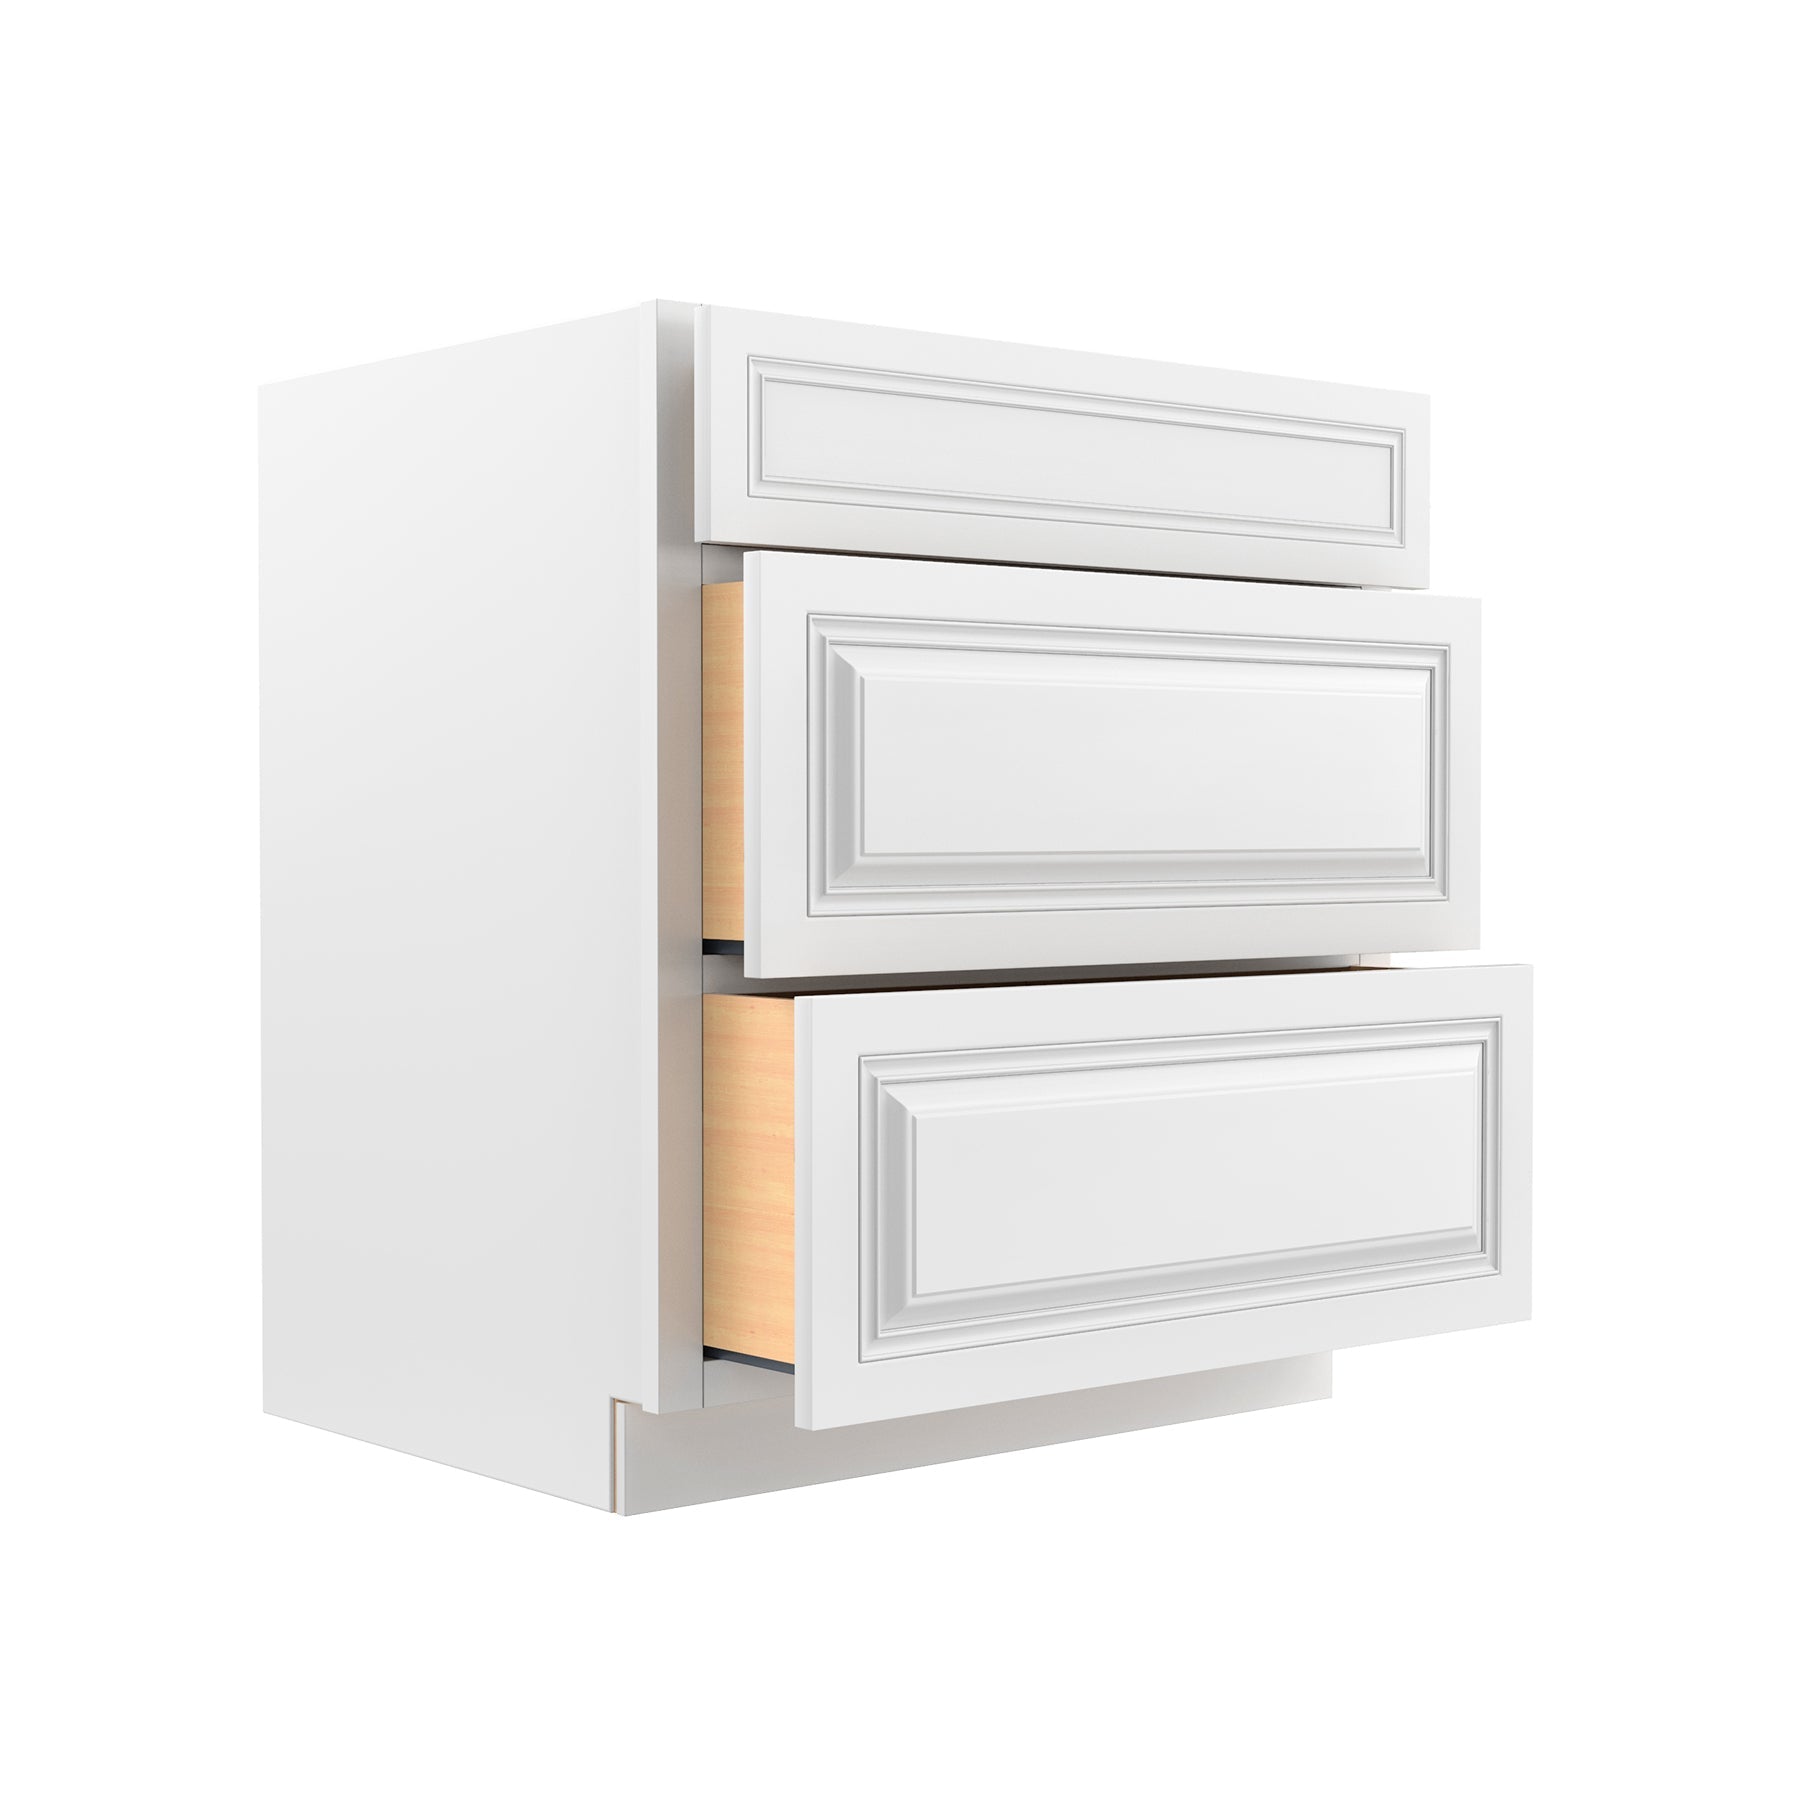 RTA - Park Avenue White - 3 Drawer Base Cabinet | 30"W x 34.5"H x 24"D